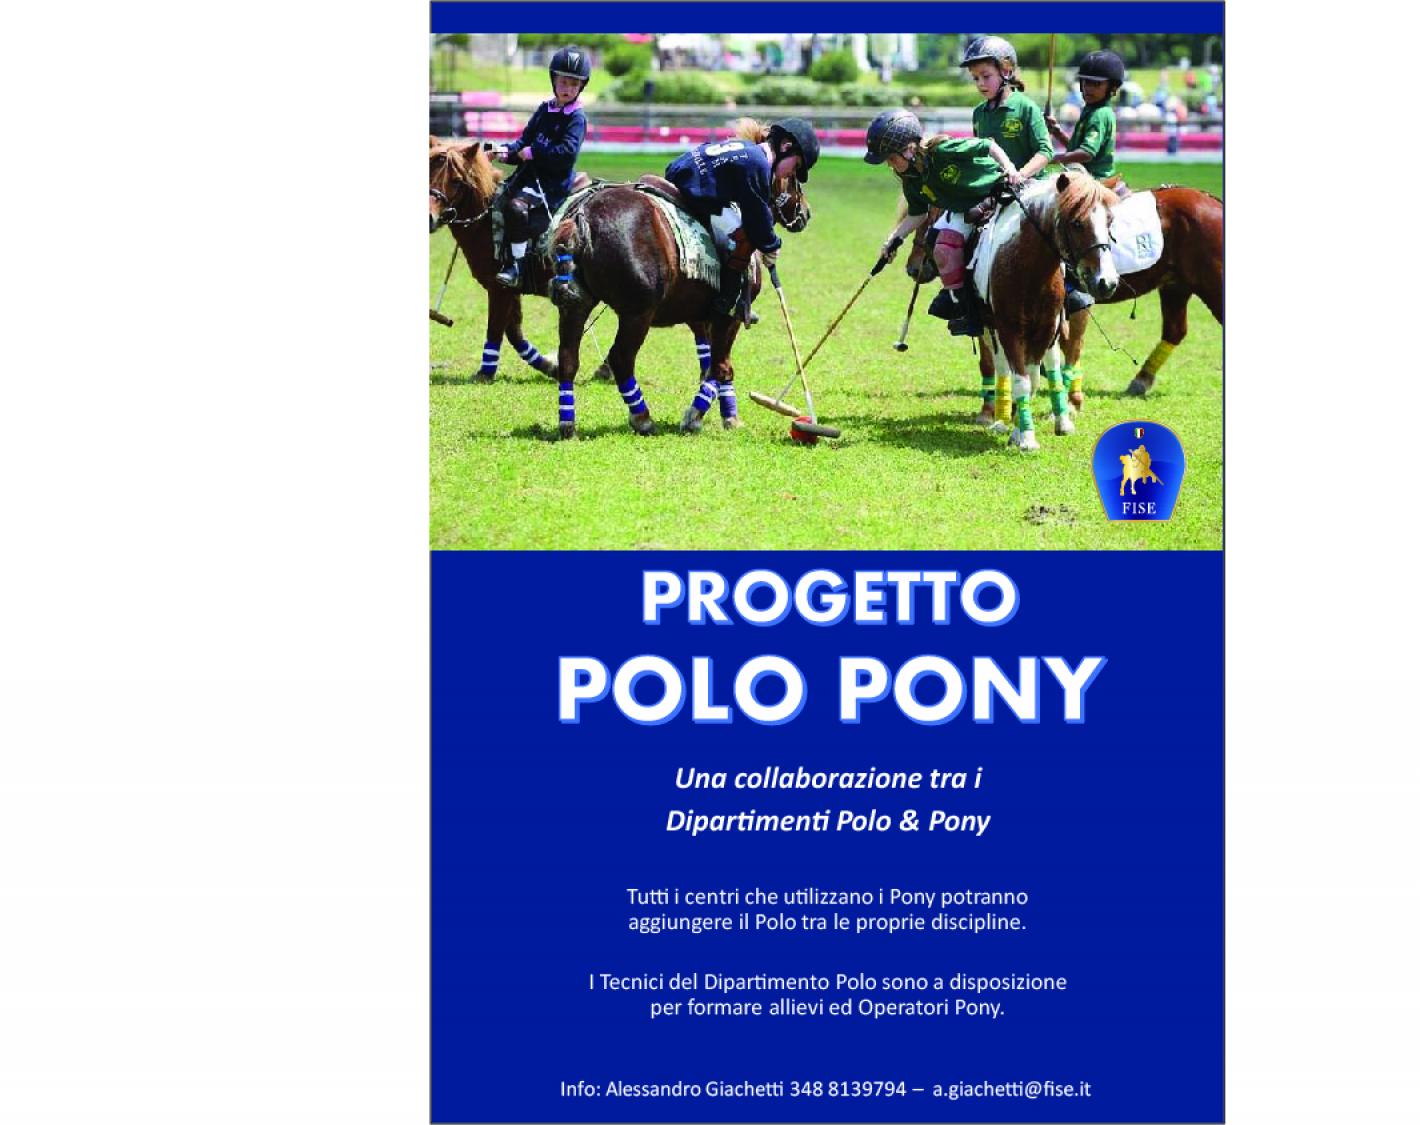 images/lombardia/News/Polo/medium/Locandina_Polo_Pony.jpg